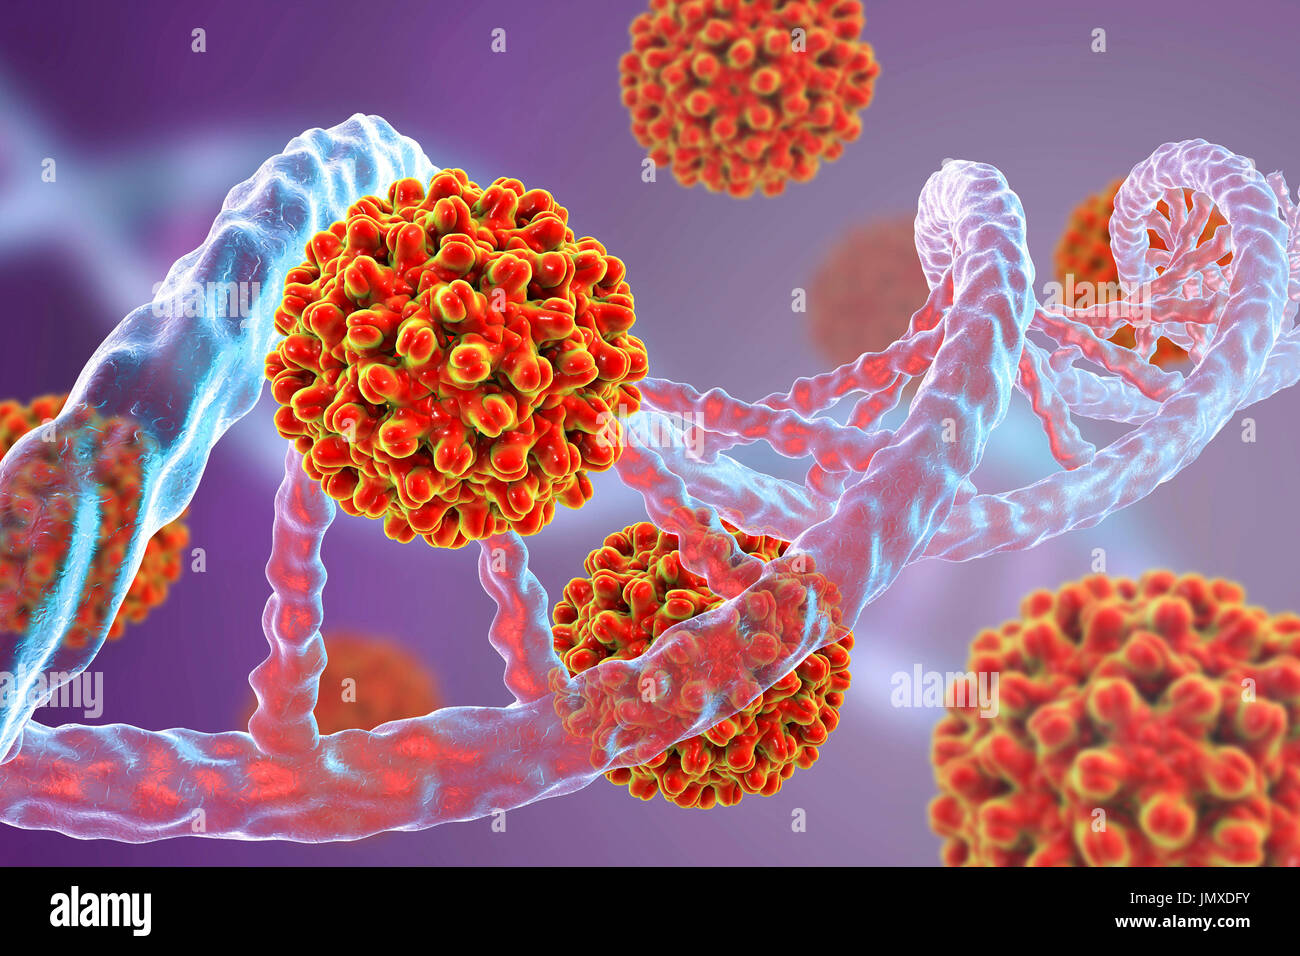 Hepatitis B-Viren und DNA. Konzeptbild für viralen Onkogenese. Hepatitis B-Viren (HBV) können als insertional Mutagene, wodurch die Aktivierung der zellulären Protoonkogenproduktes Host DNA integriert. Integration der Viren-DNA in das menschliche Genom gilt als eine frühe Veranstaltung dabei krebserregende und induzieren kann, durch insertional Mutagenese, die Änderung der Genexpression und chromosomale Instabilität. Stockfoto